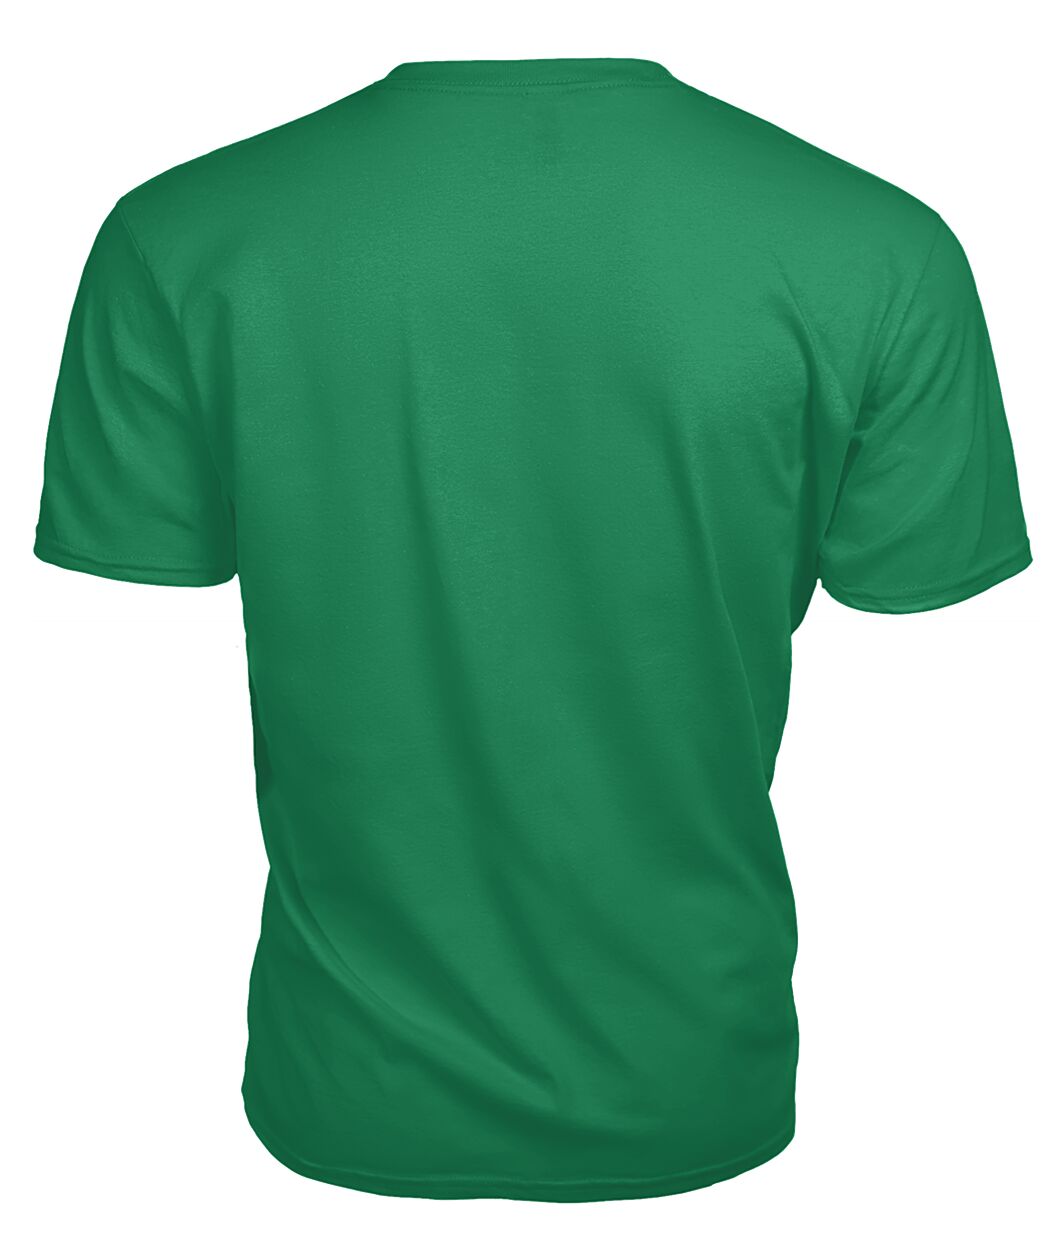 Roberts Family Tartan - 2D T-shirt